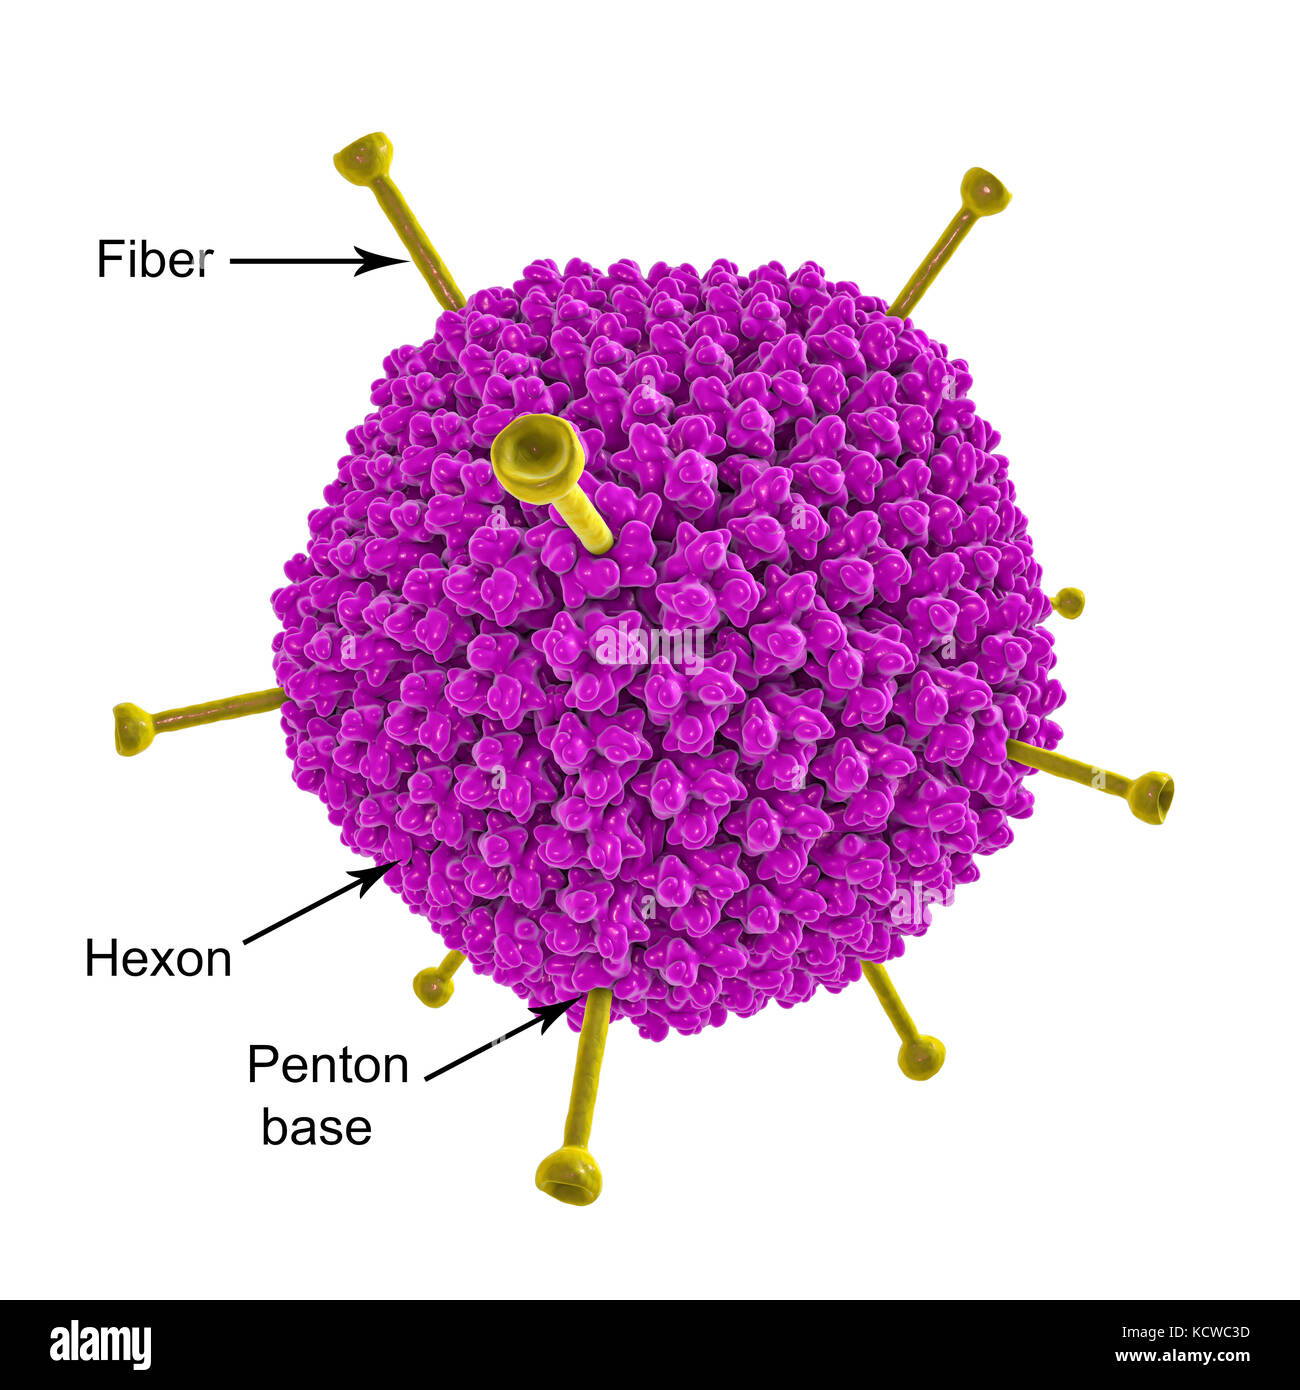 L'ADÉNOVIRUS AD-36 et les cellules adipeuses. Illustration d'ordinateur d'adénovirus AD-36 les particules et les cellules adipeuses (adipocytes). Annonce-36 est l'un des 51 types d'adénovirus connus pour infecter les humains. La plupart des adénovirus suite au froid, gastro-entérite, une inflammation ou la fièvre. Annonce-36 est inhabituelle en ce qu'elle peut être liée à l'obésité humaine et pourrait contribuer à l'épidémie d'obésité. Banque D'Images